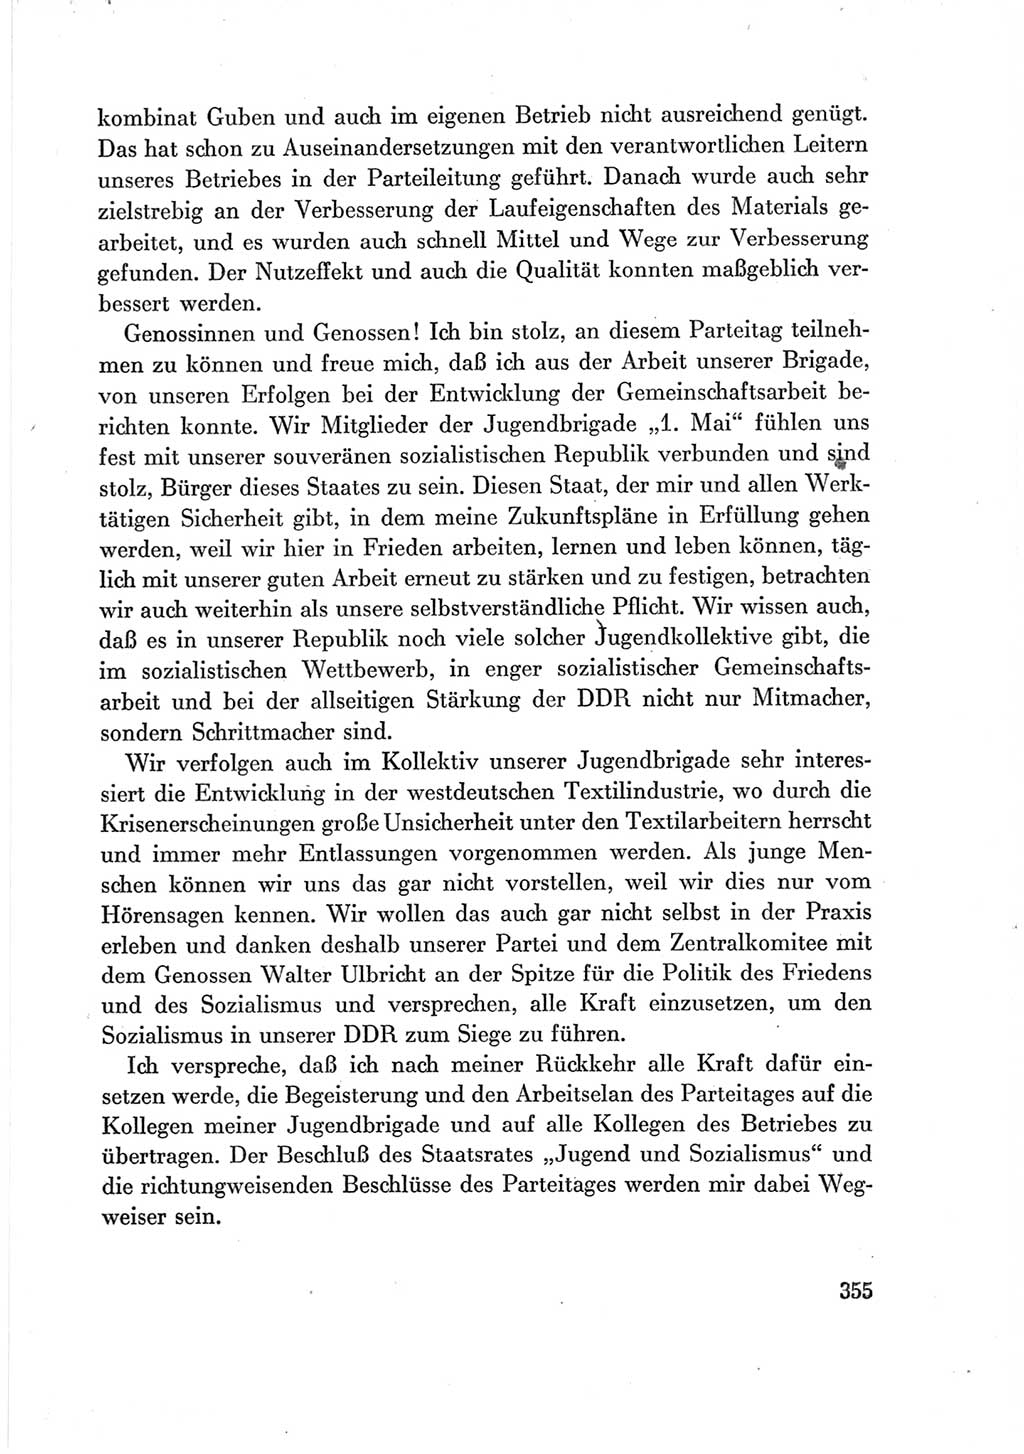 Protokoll der Verhandlungen des Ⅶ. Parteitages der Sozialistischen Einheitspartei Deutschlands (SED) [Deutsche Demokratische Republik (DDR)] 1967, Band Ⅲ, Seite 355 (Prot. Verh. Ⅶ. PT SED DDR 1967, Bd. Ⅲ, S. 355)